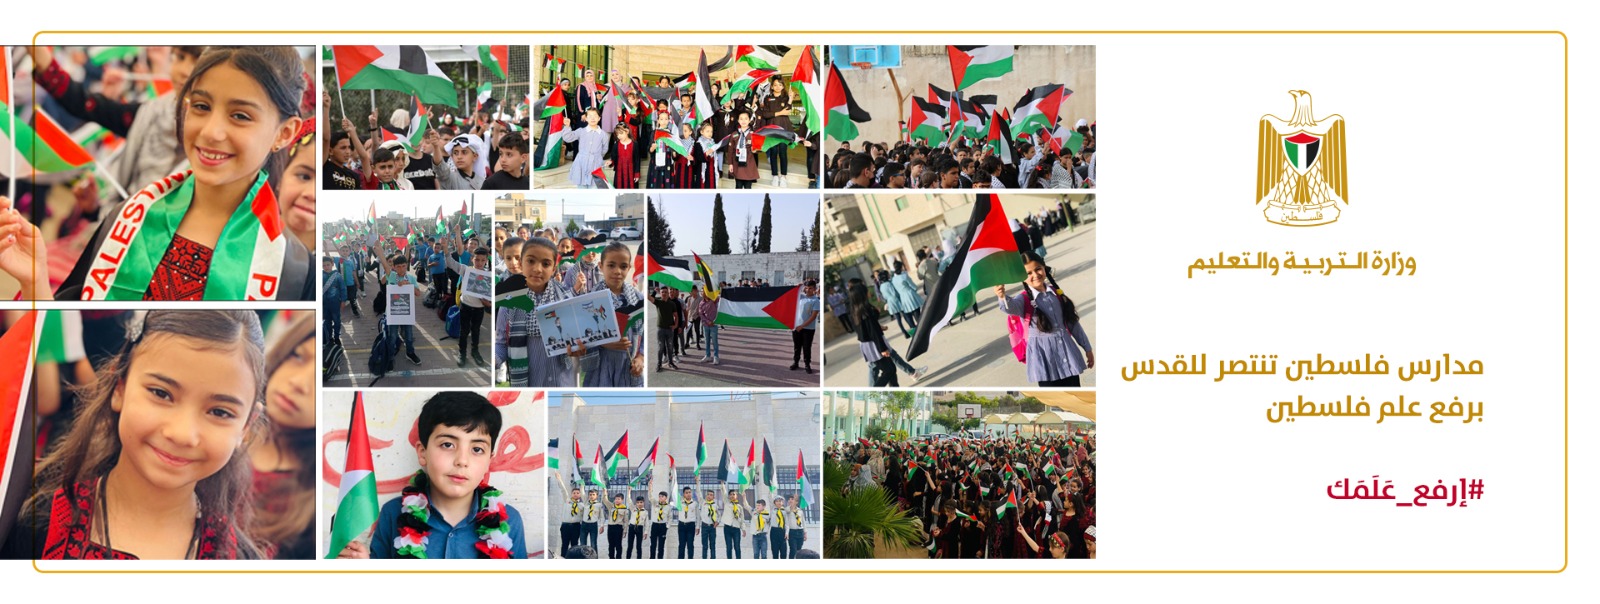 مدارس فلسطين تنتصر للقدس برفع العلم